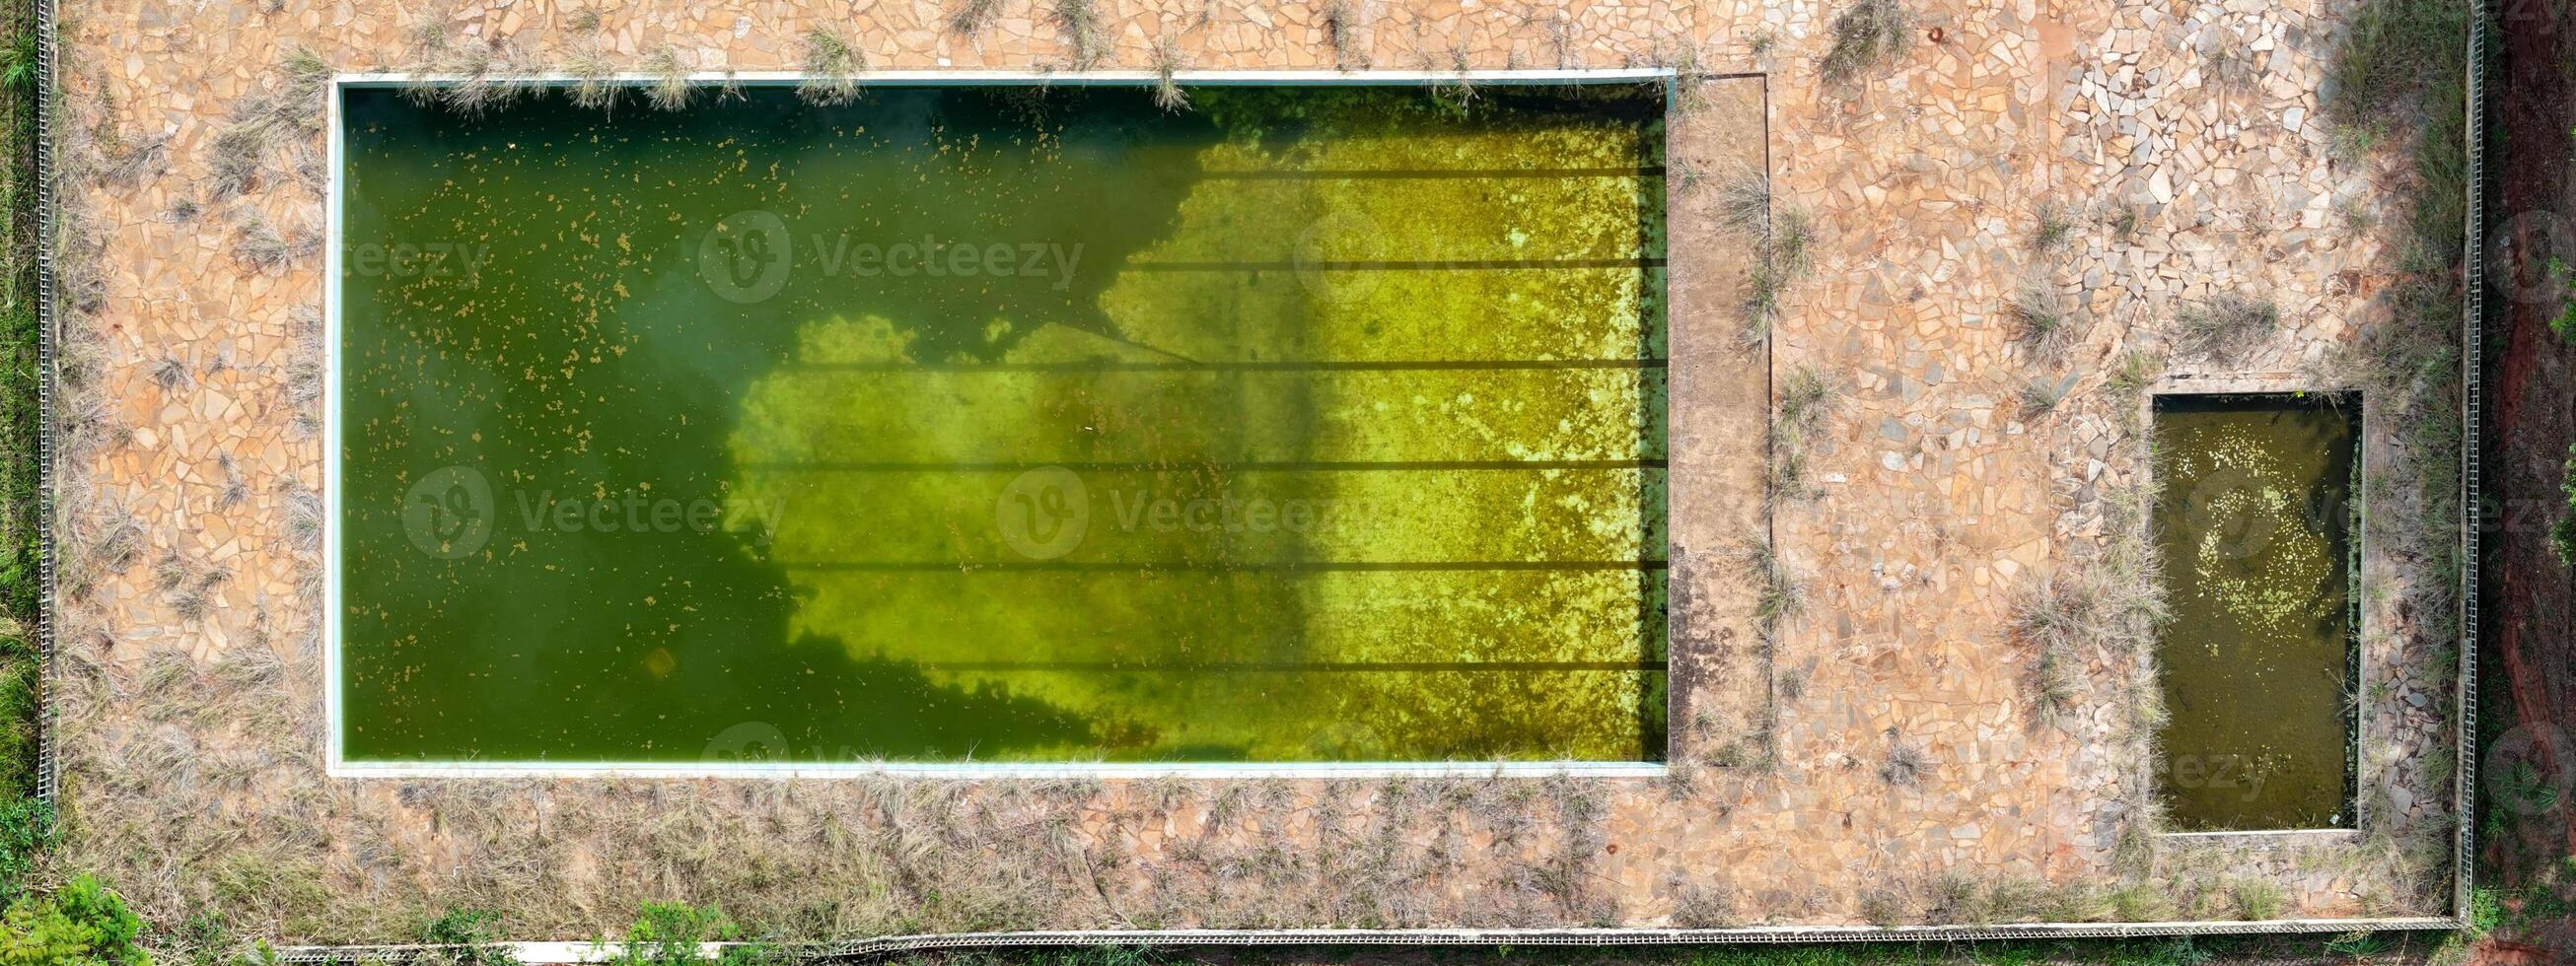 abandonado nadando piscina con verde sucio agua foto